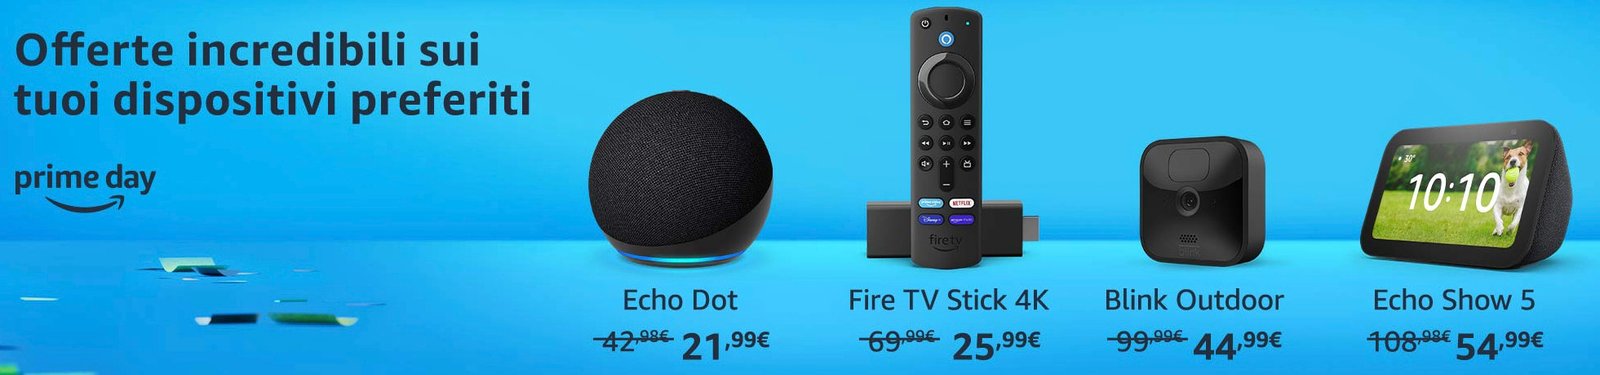 Tutti i prodotti Amazon in offerta: Kindle, Echo Dot, Fire Tv.